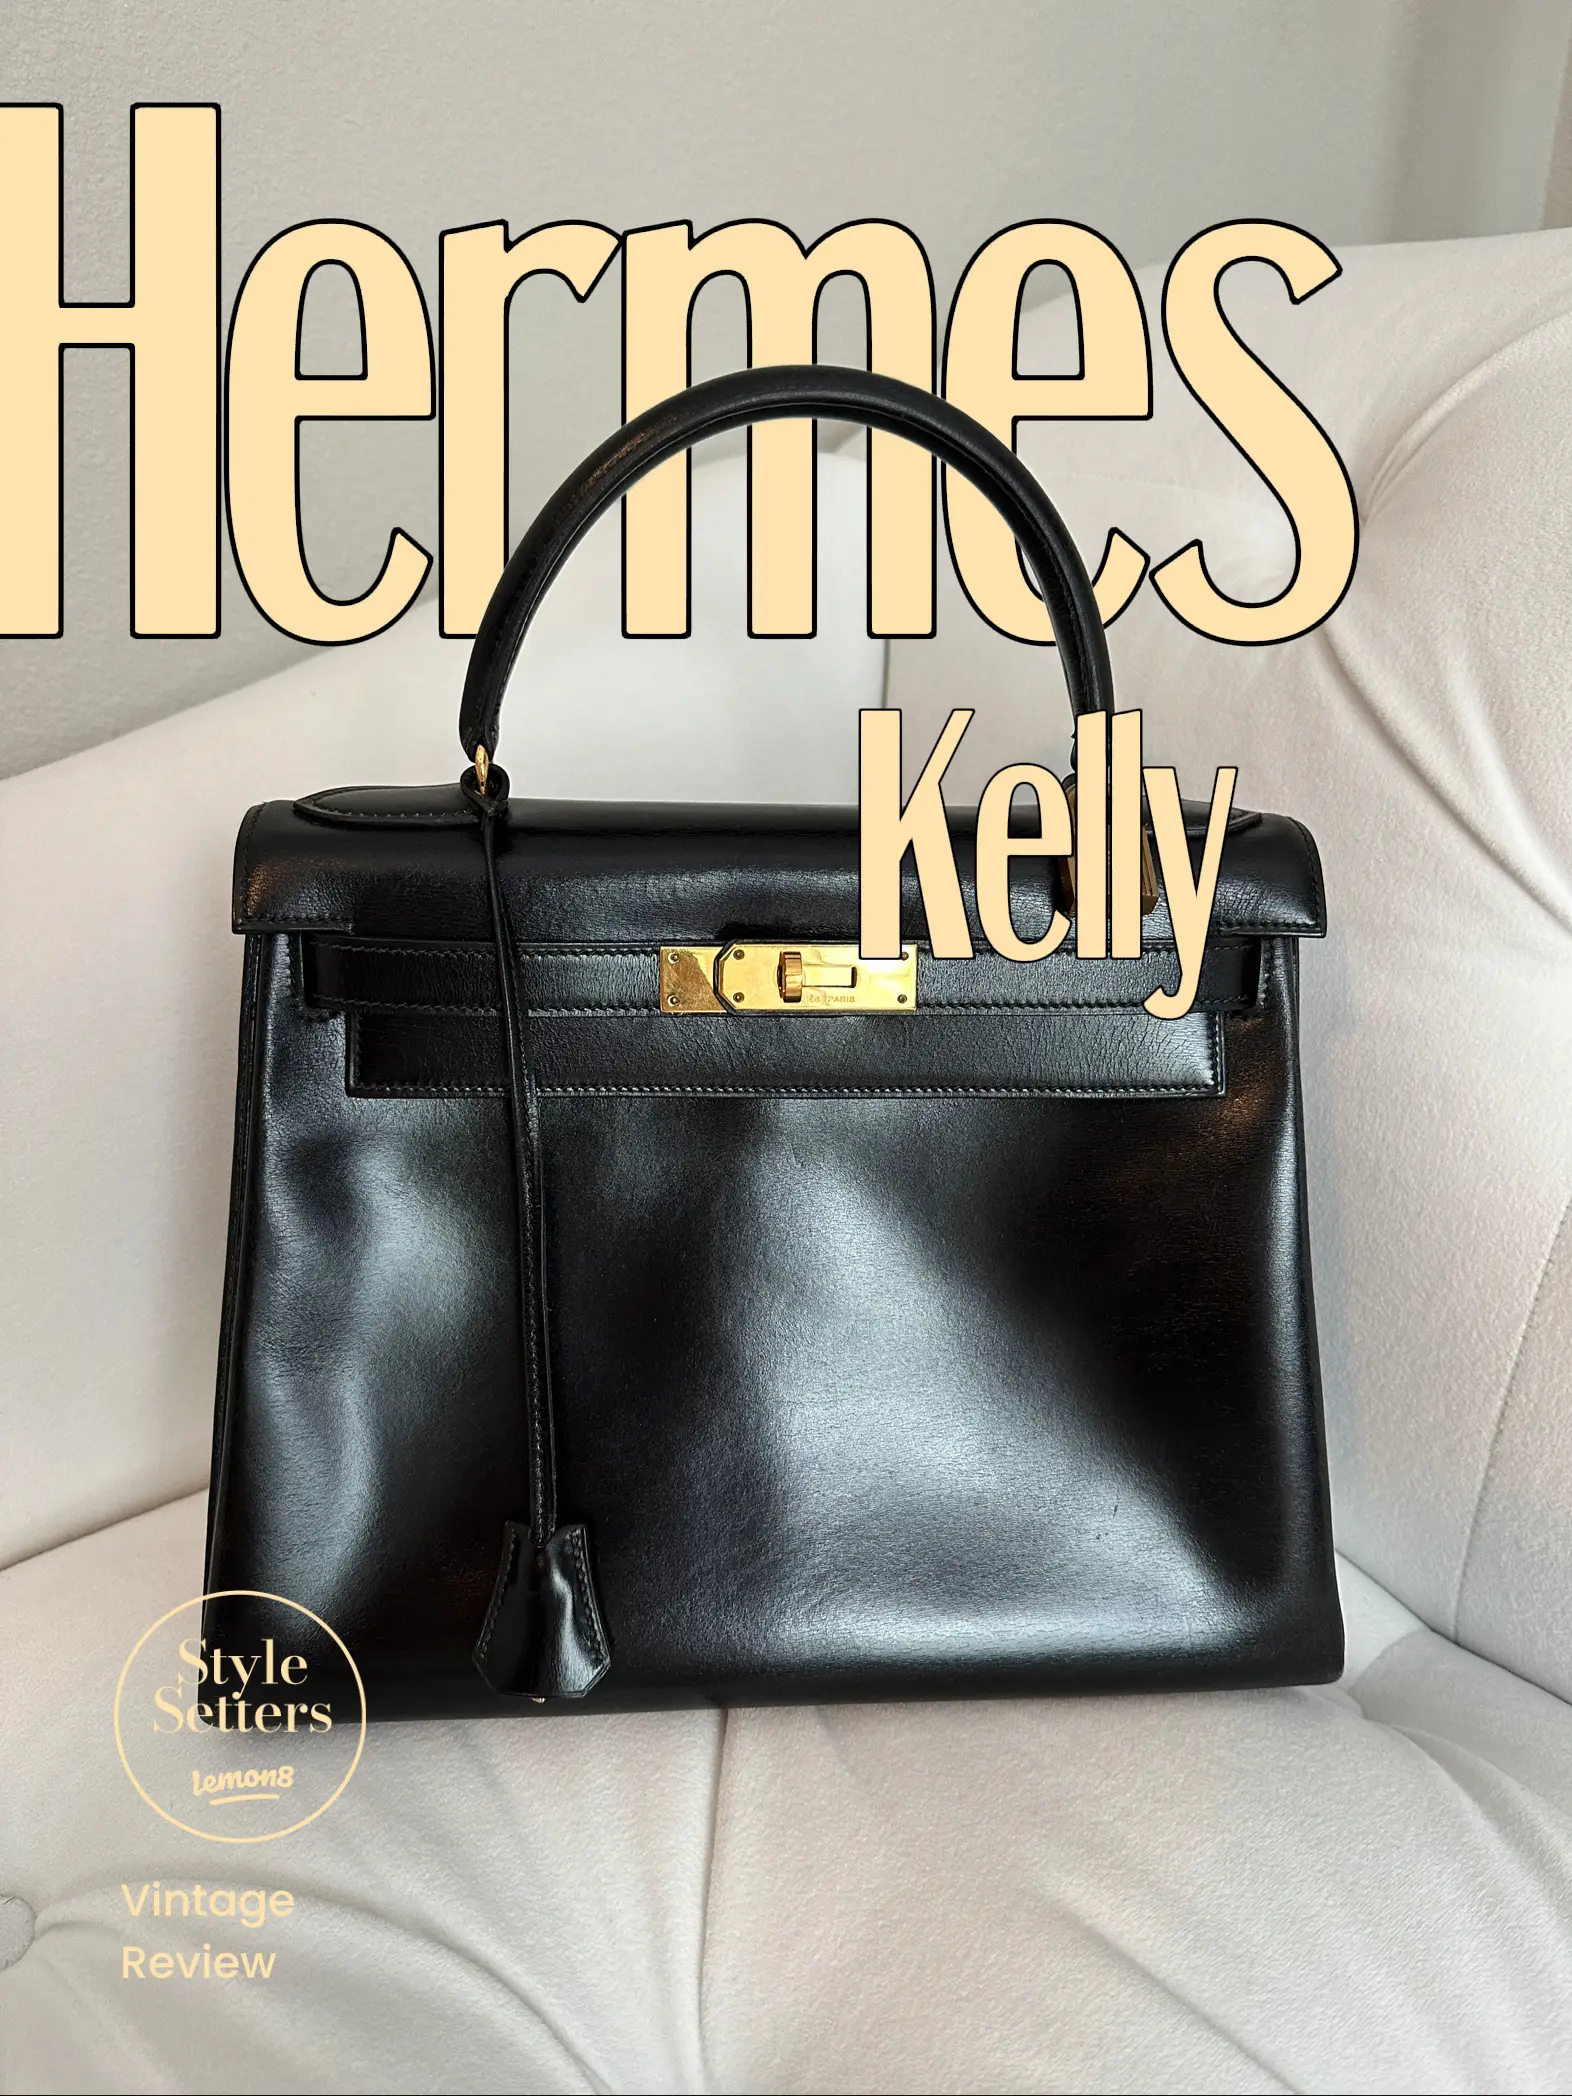 Hermes Mini Kelly vs Pochette - in depth review and comparison #hermeskelly  #hermes 